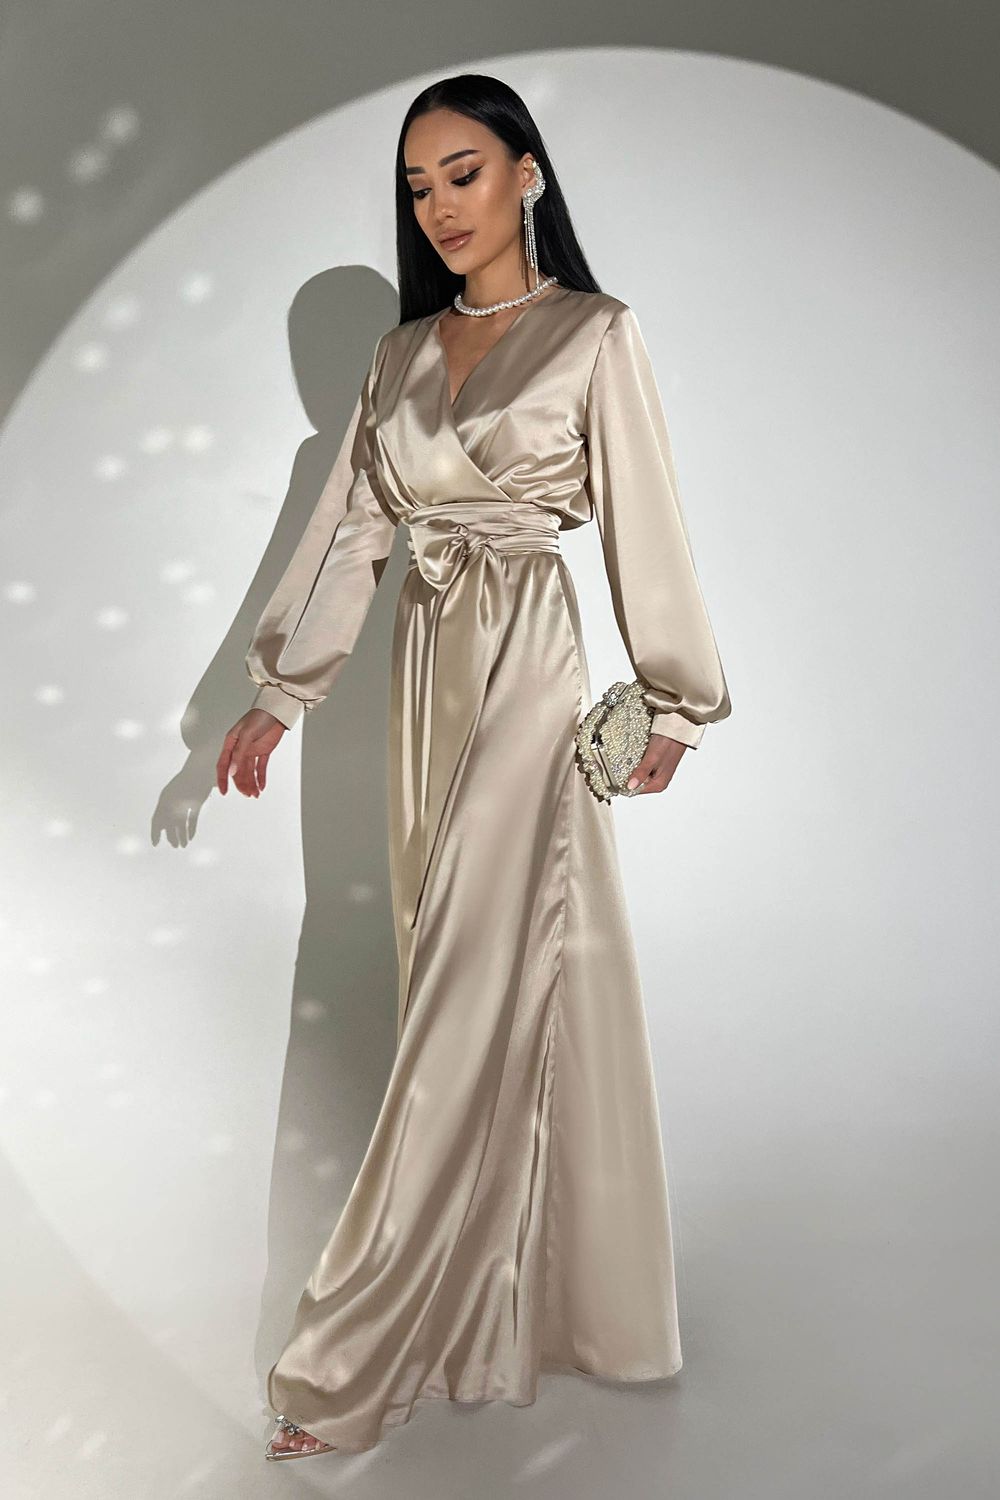 Элегантное вечернее платье из шелка бежевого цвета - фото